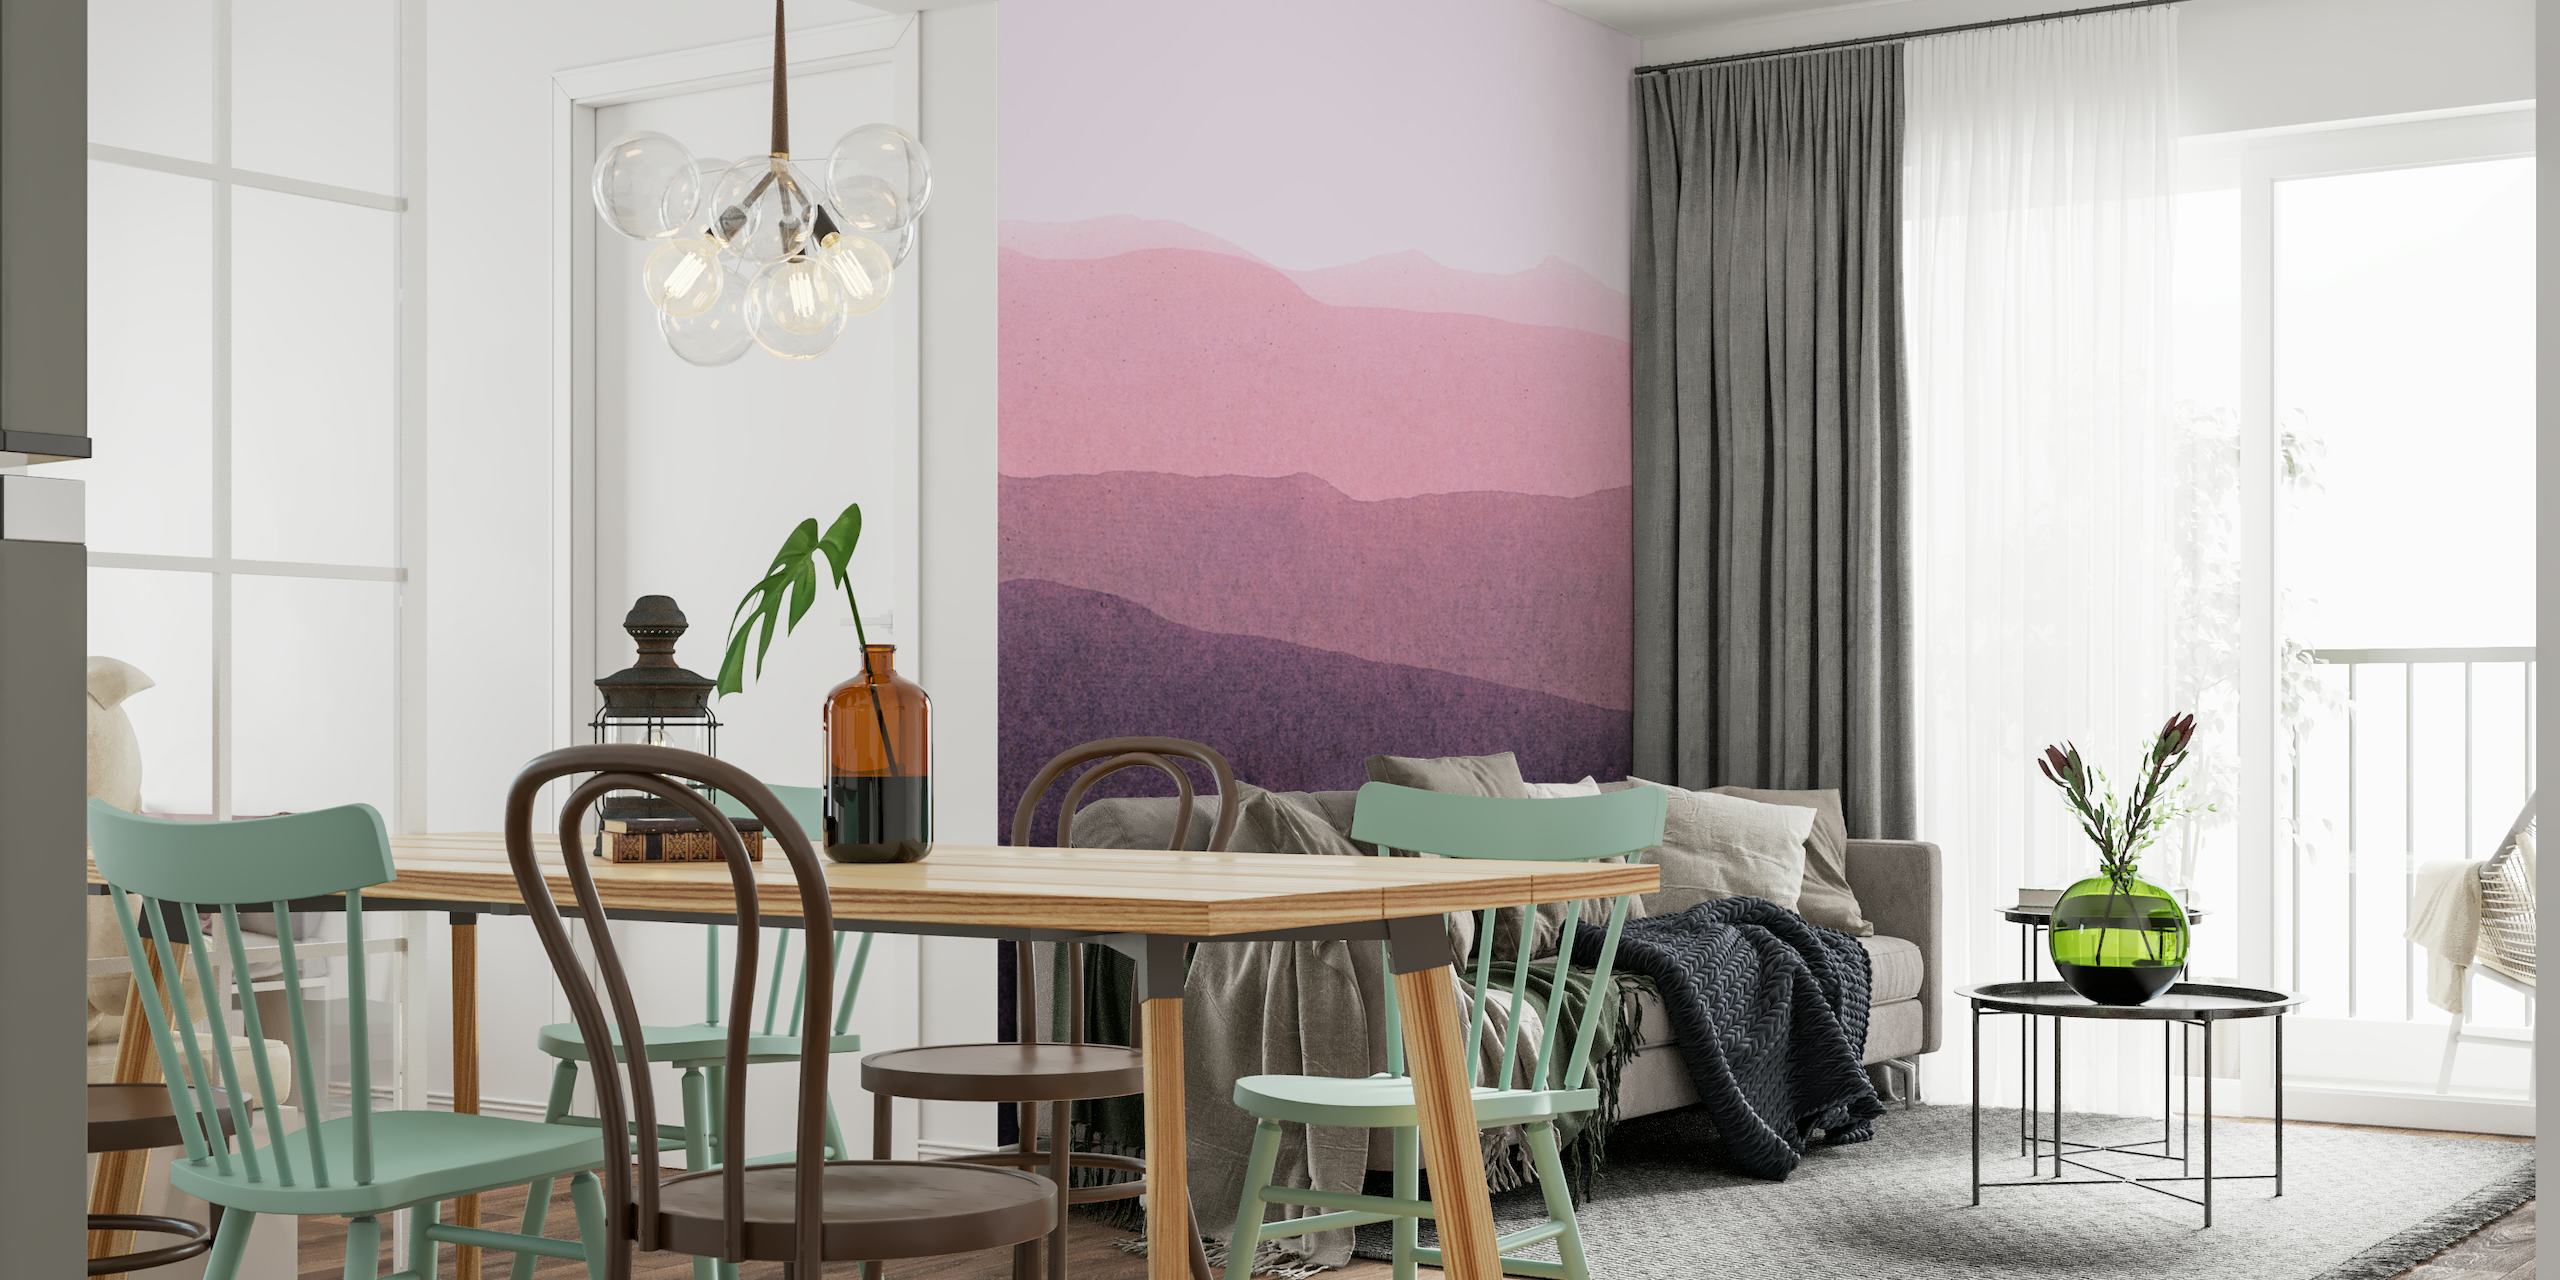 Seinämaalaus, joka esittää rauhallista kaltevaa maisemaa ja päällekkäisiä kukkuloita hämärässä vaaleanpunaisesta syvään purppuraan